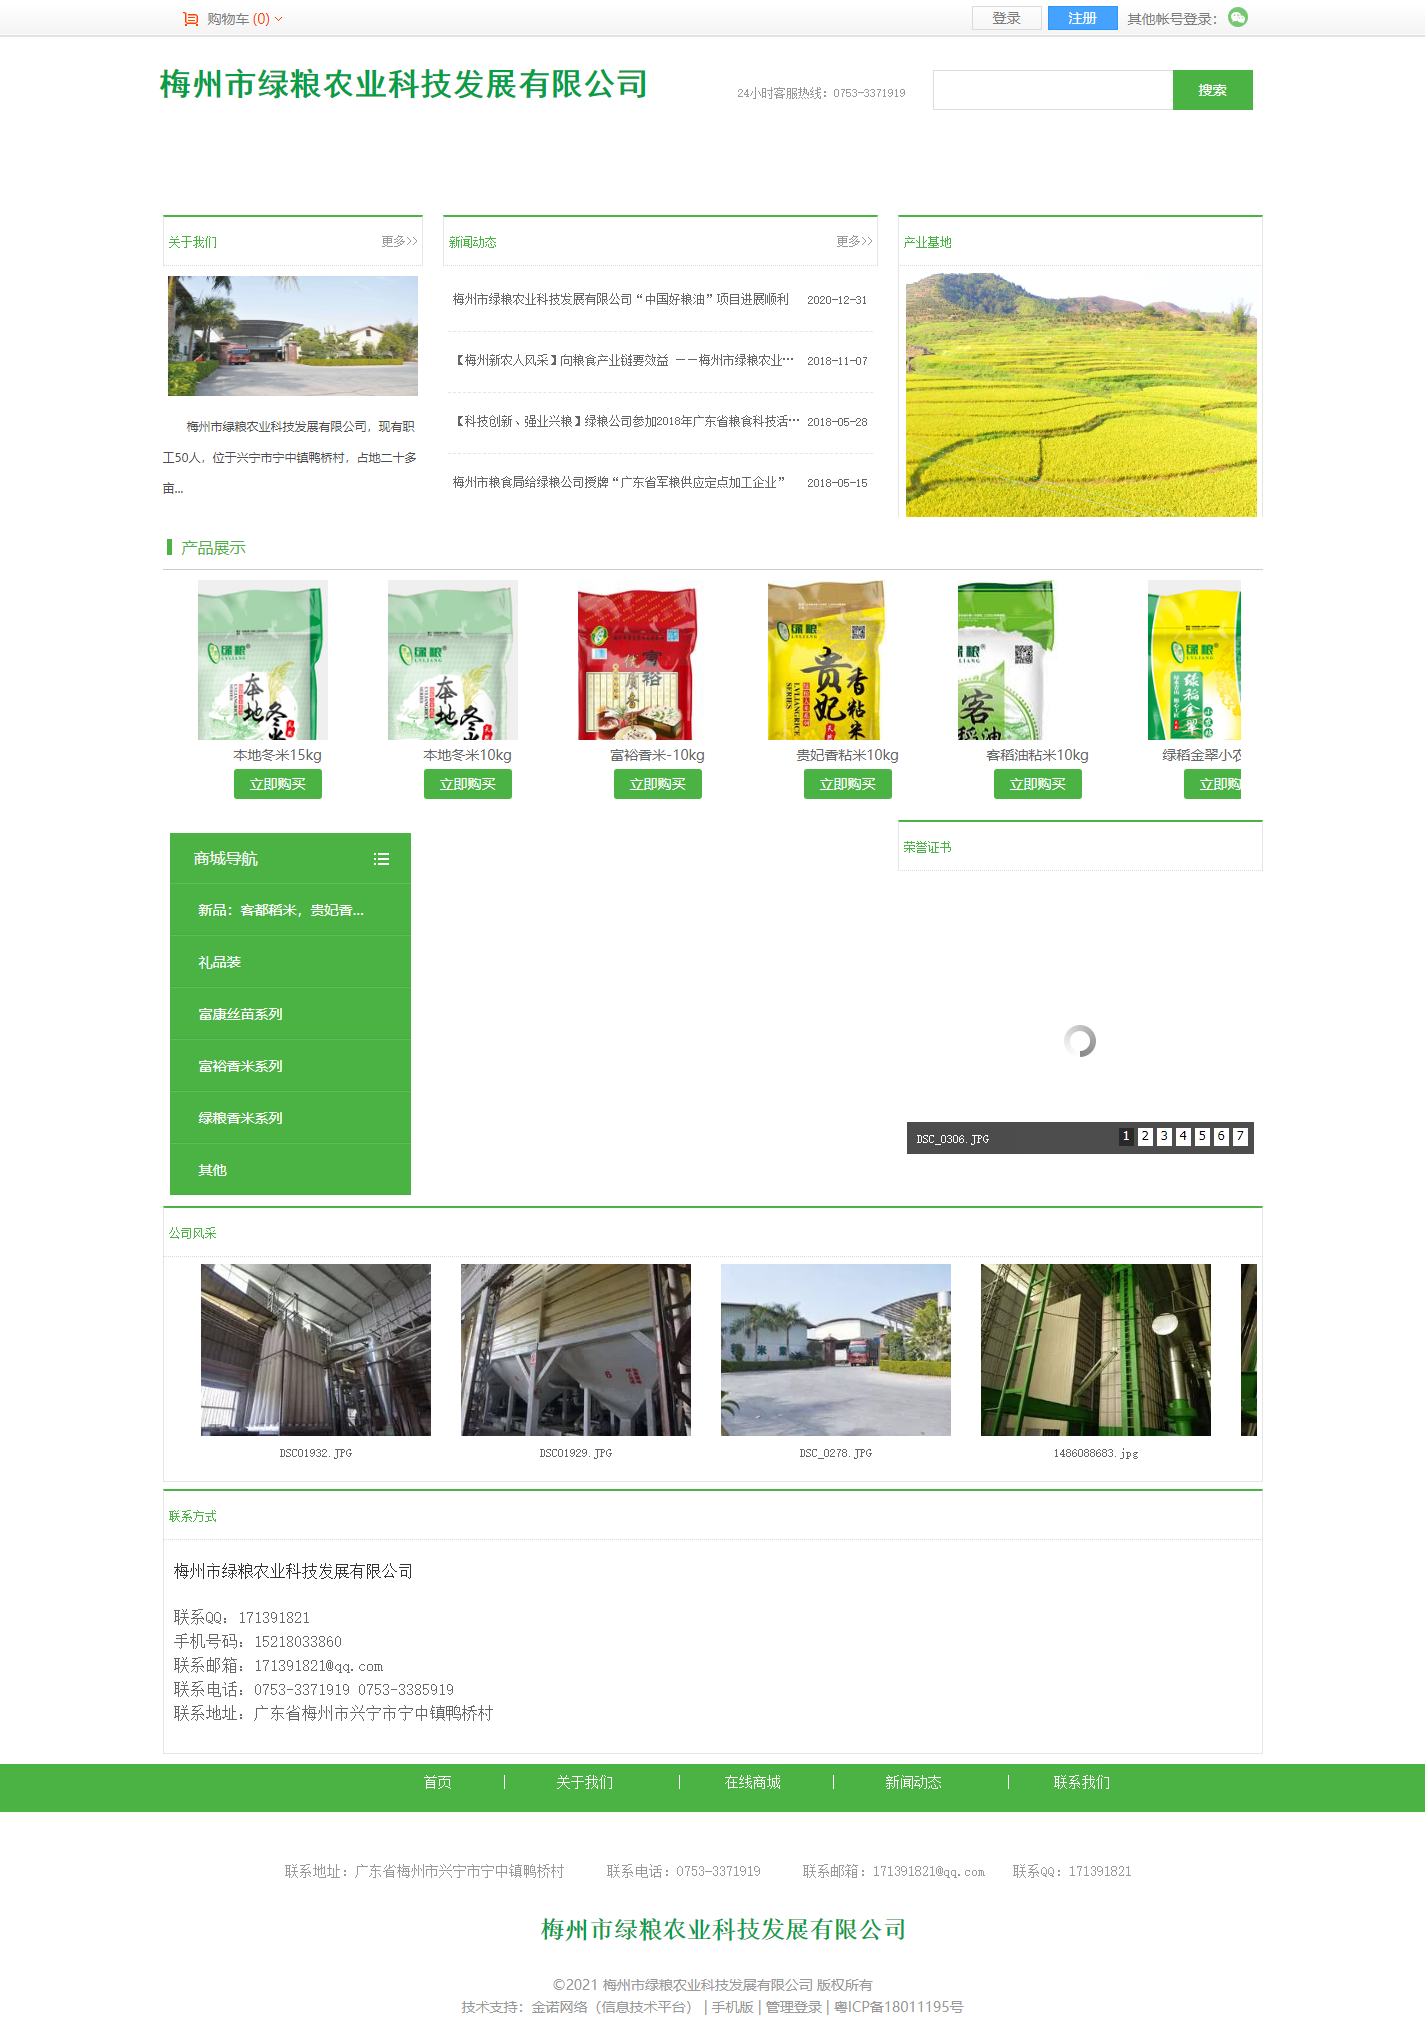 梅州市绿粮农业科技发展有限公司网站案例